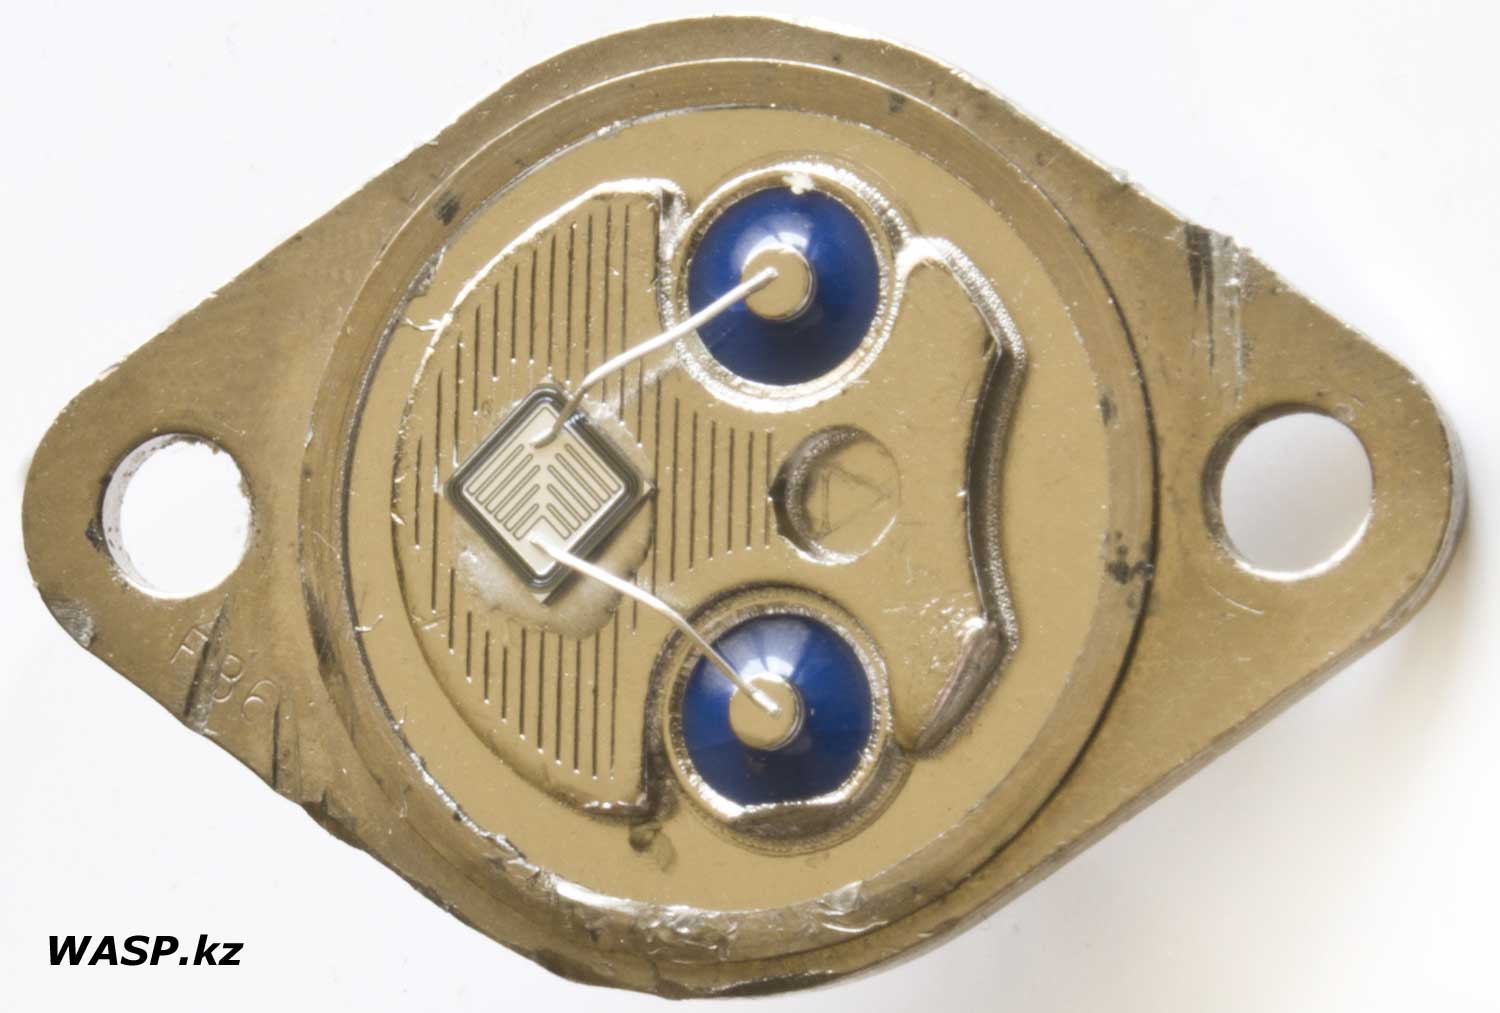 BUX47 транзистор, какие содержание драгметаллов в нем